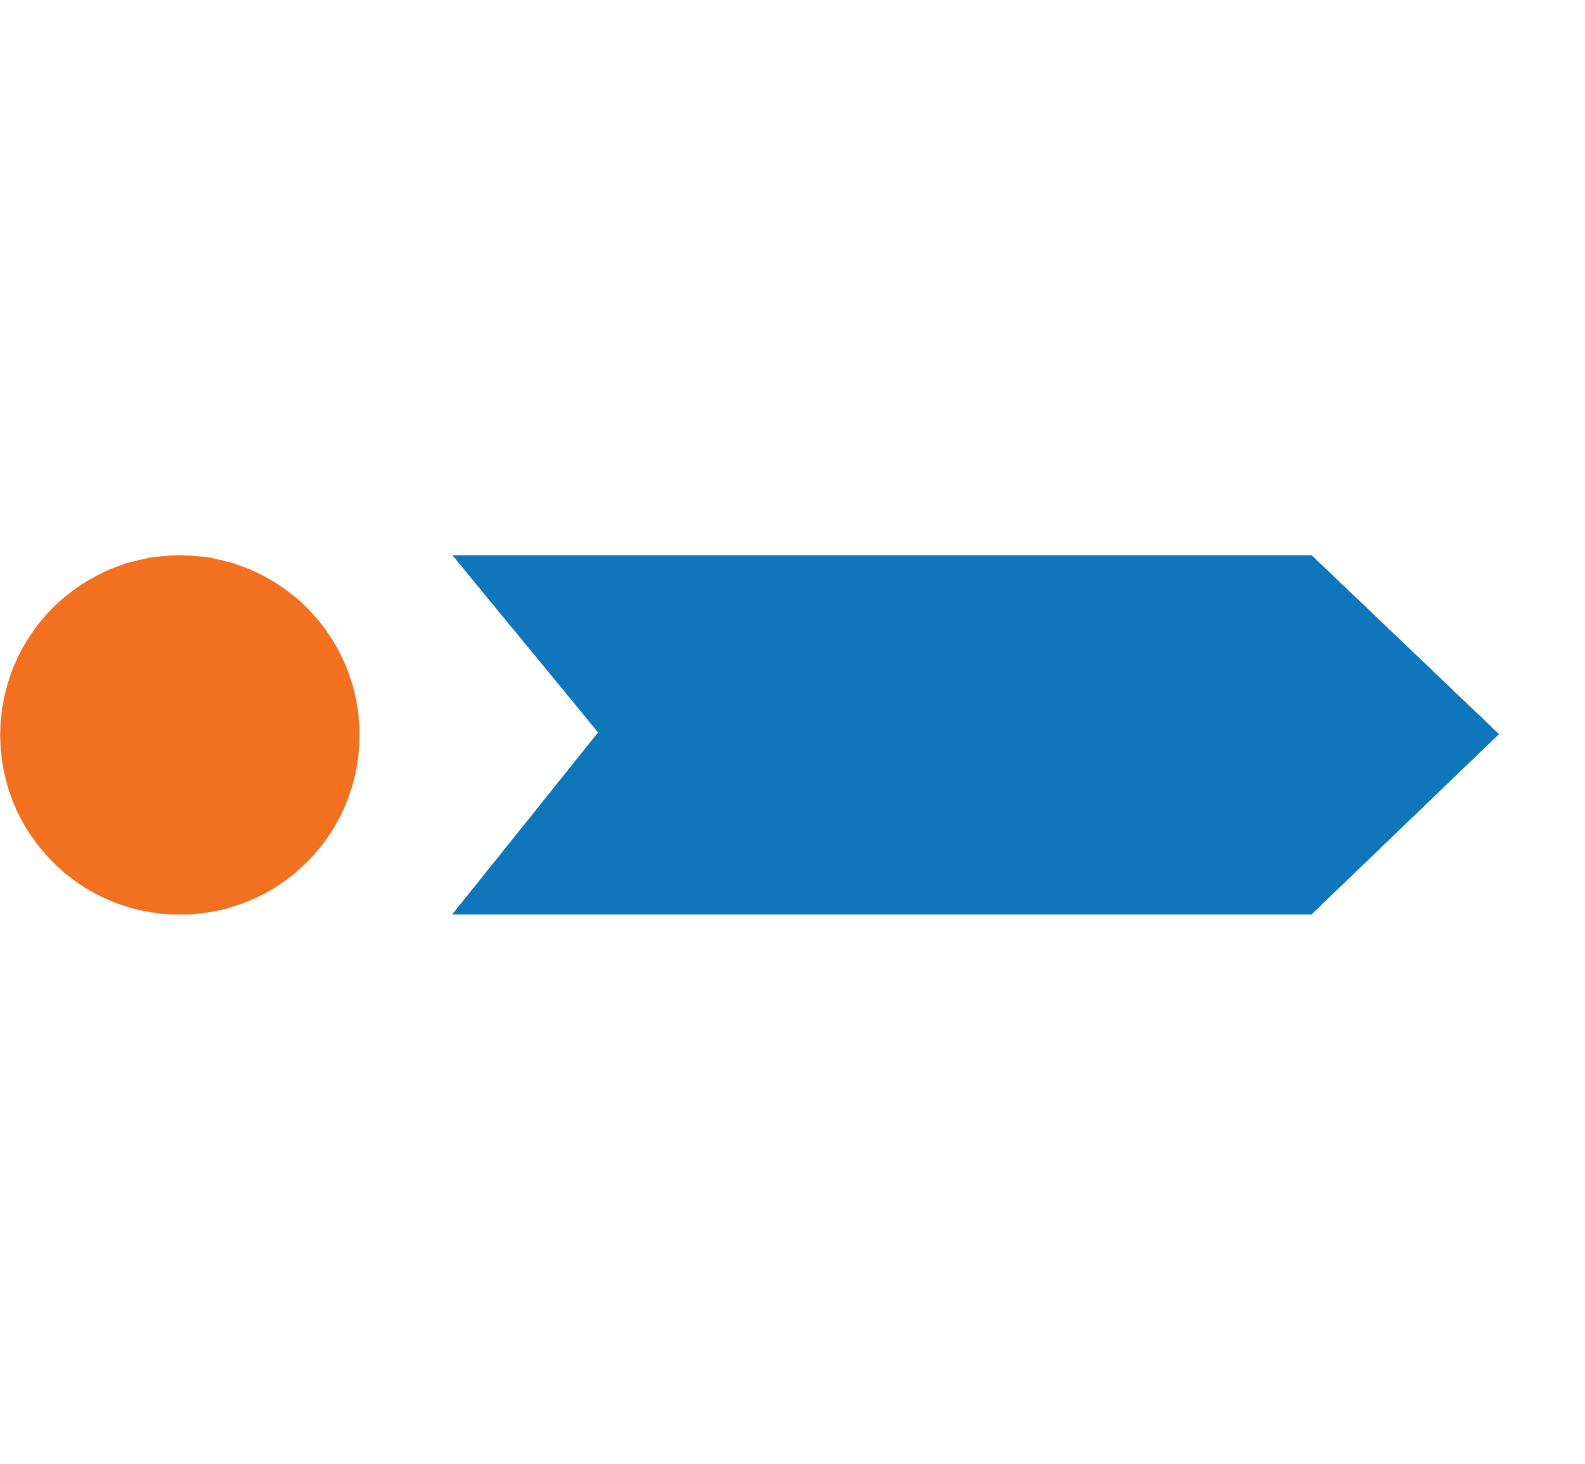 Akero Therapeutics logo pour fonds sombres (PNG transparent)